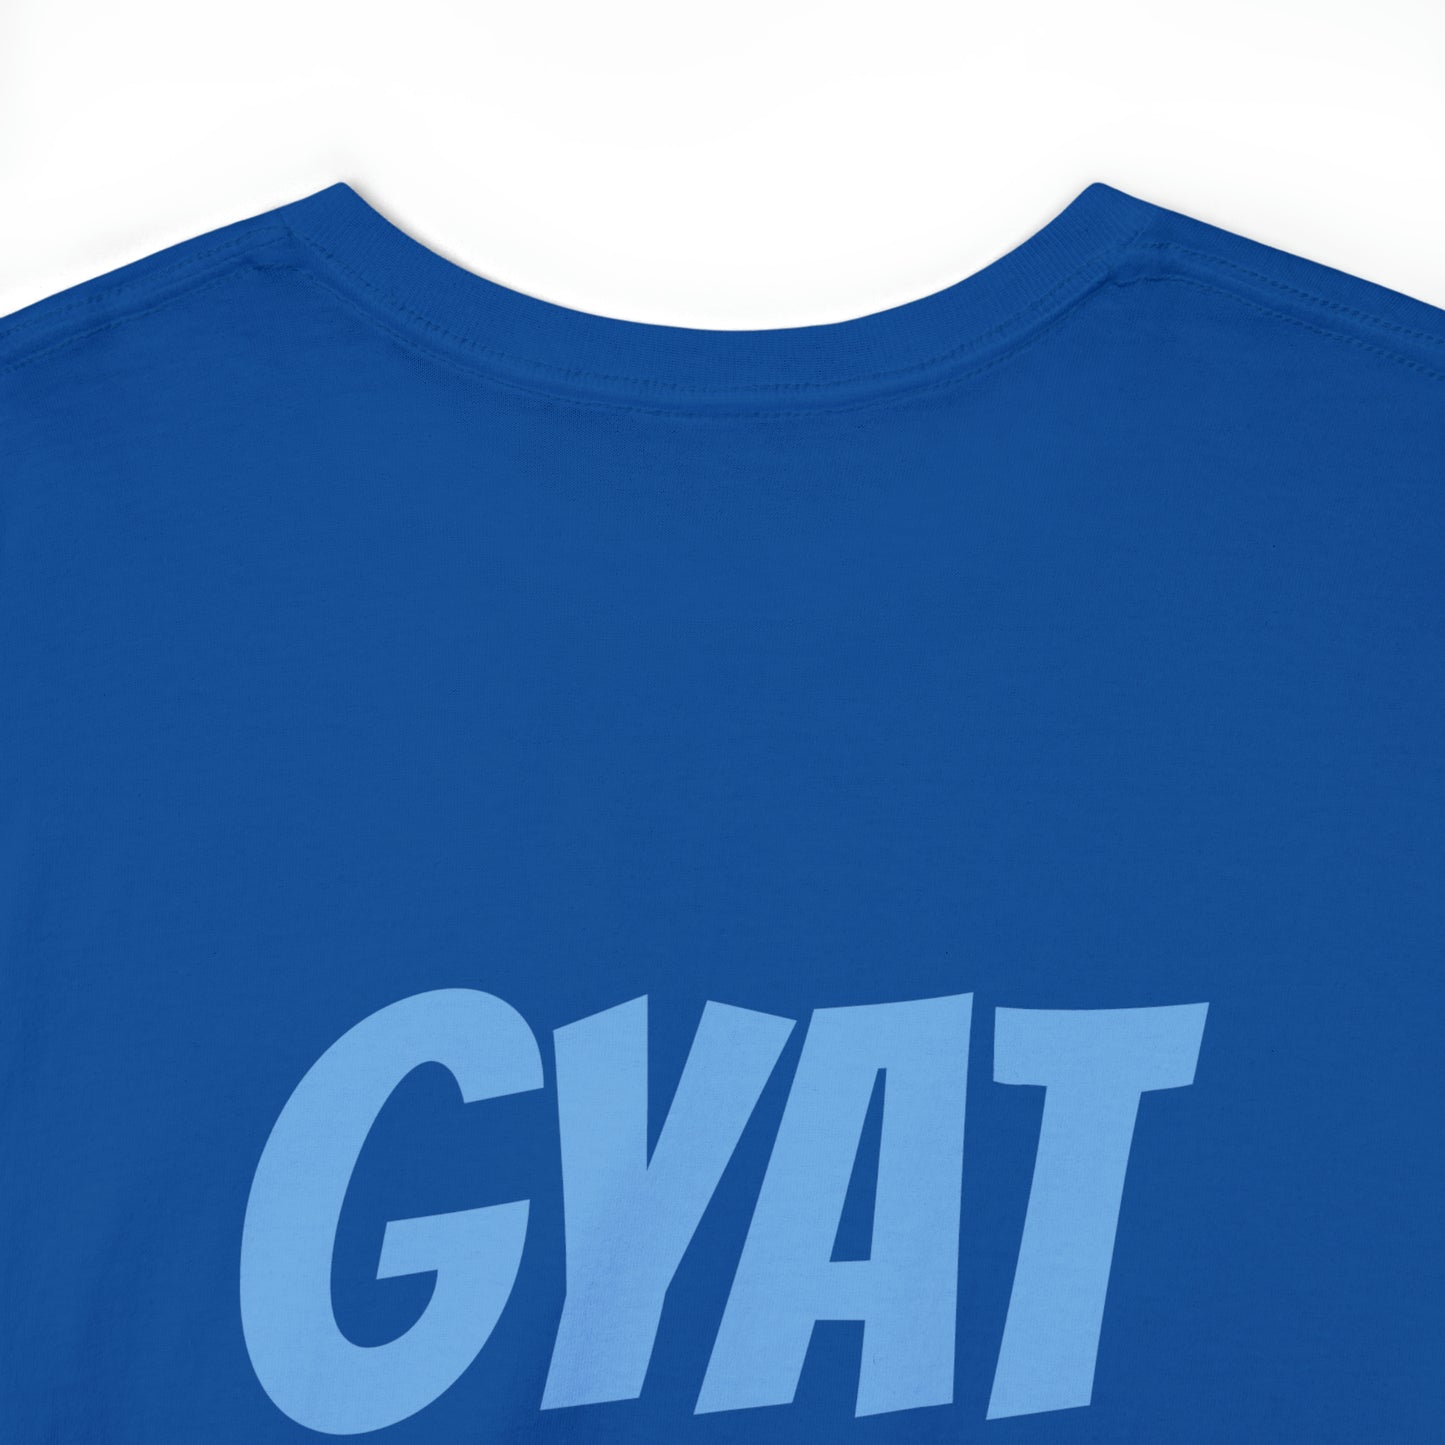 GYAT Shirt